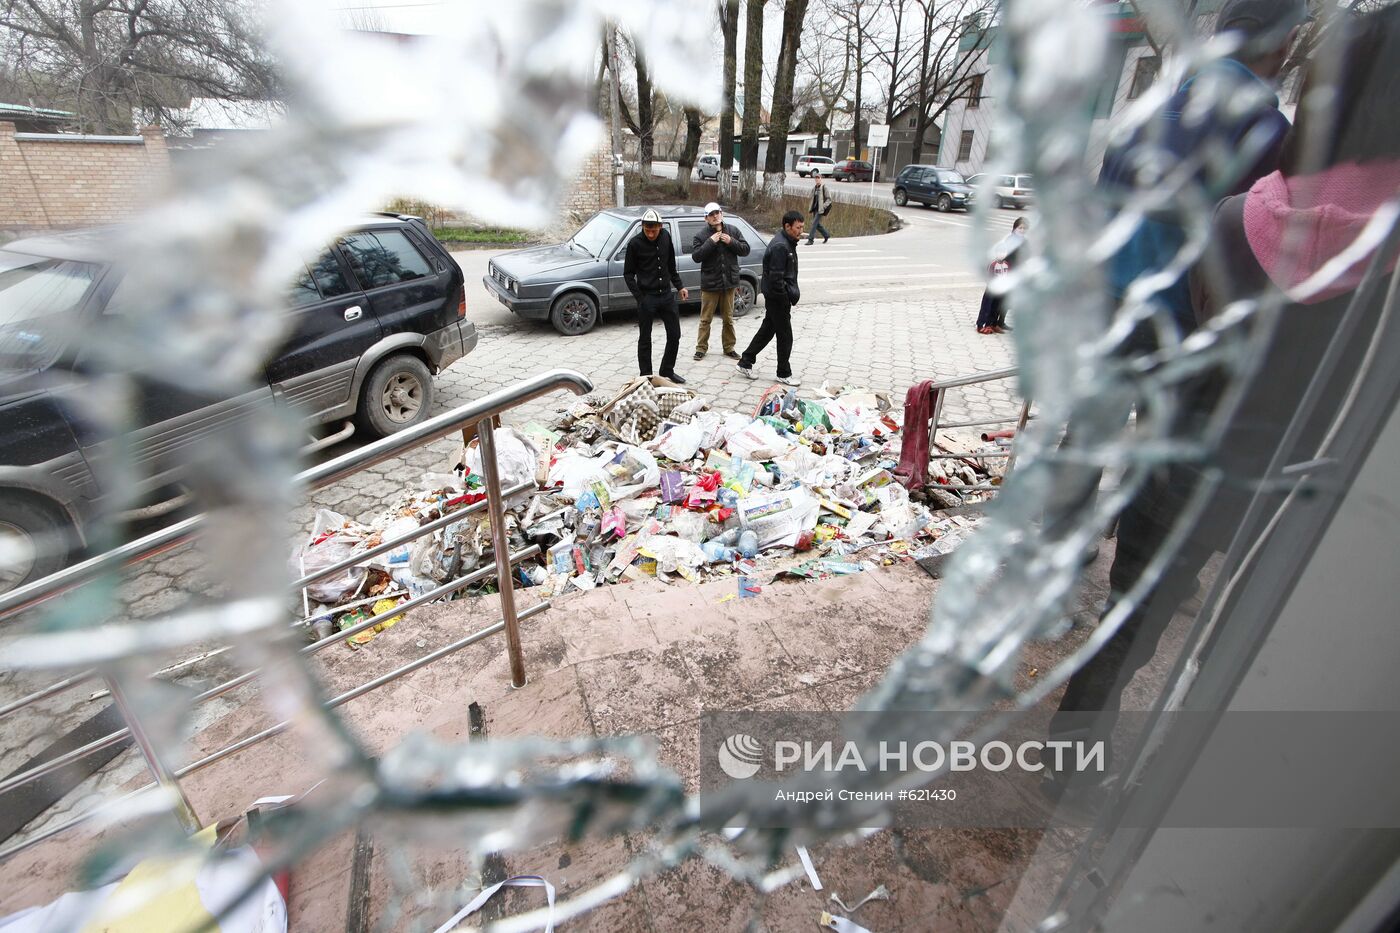 Разбитая витрина одного из магазинов города Бишкека